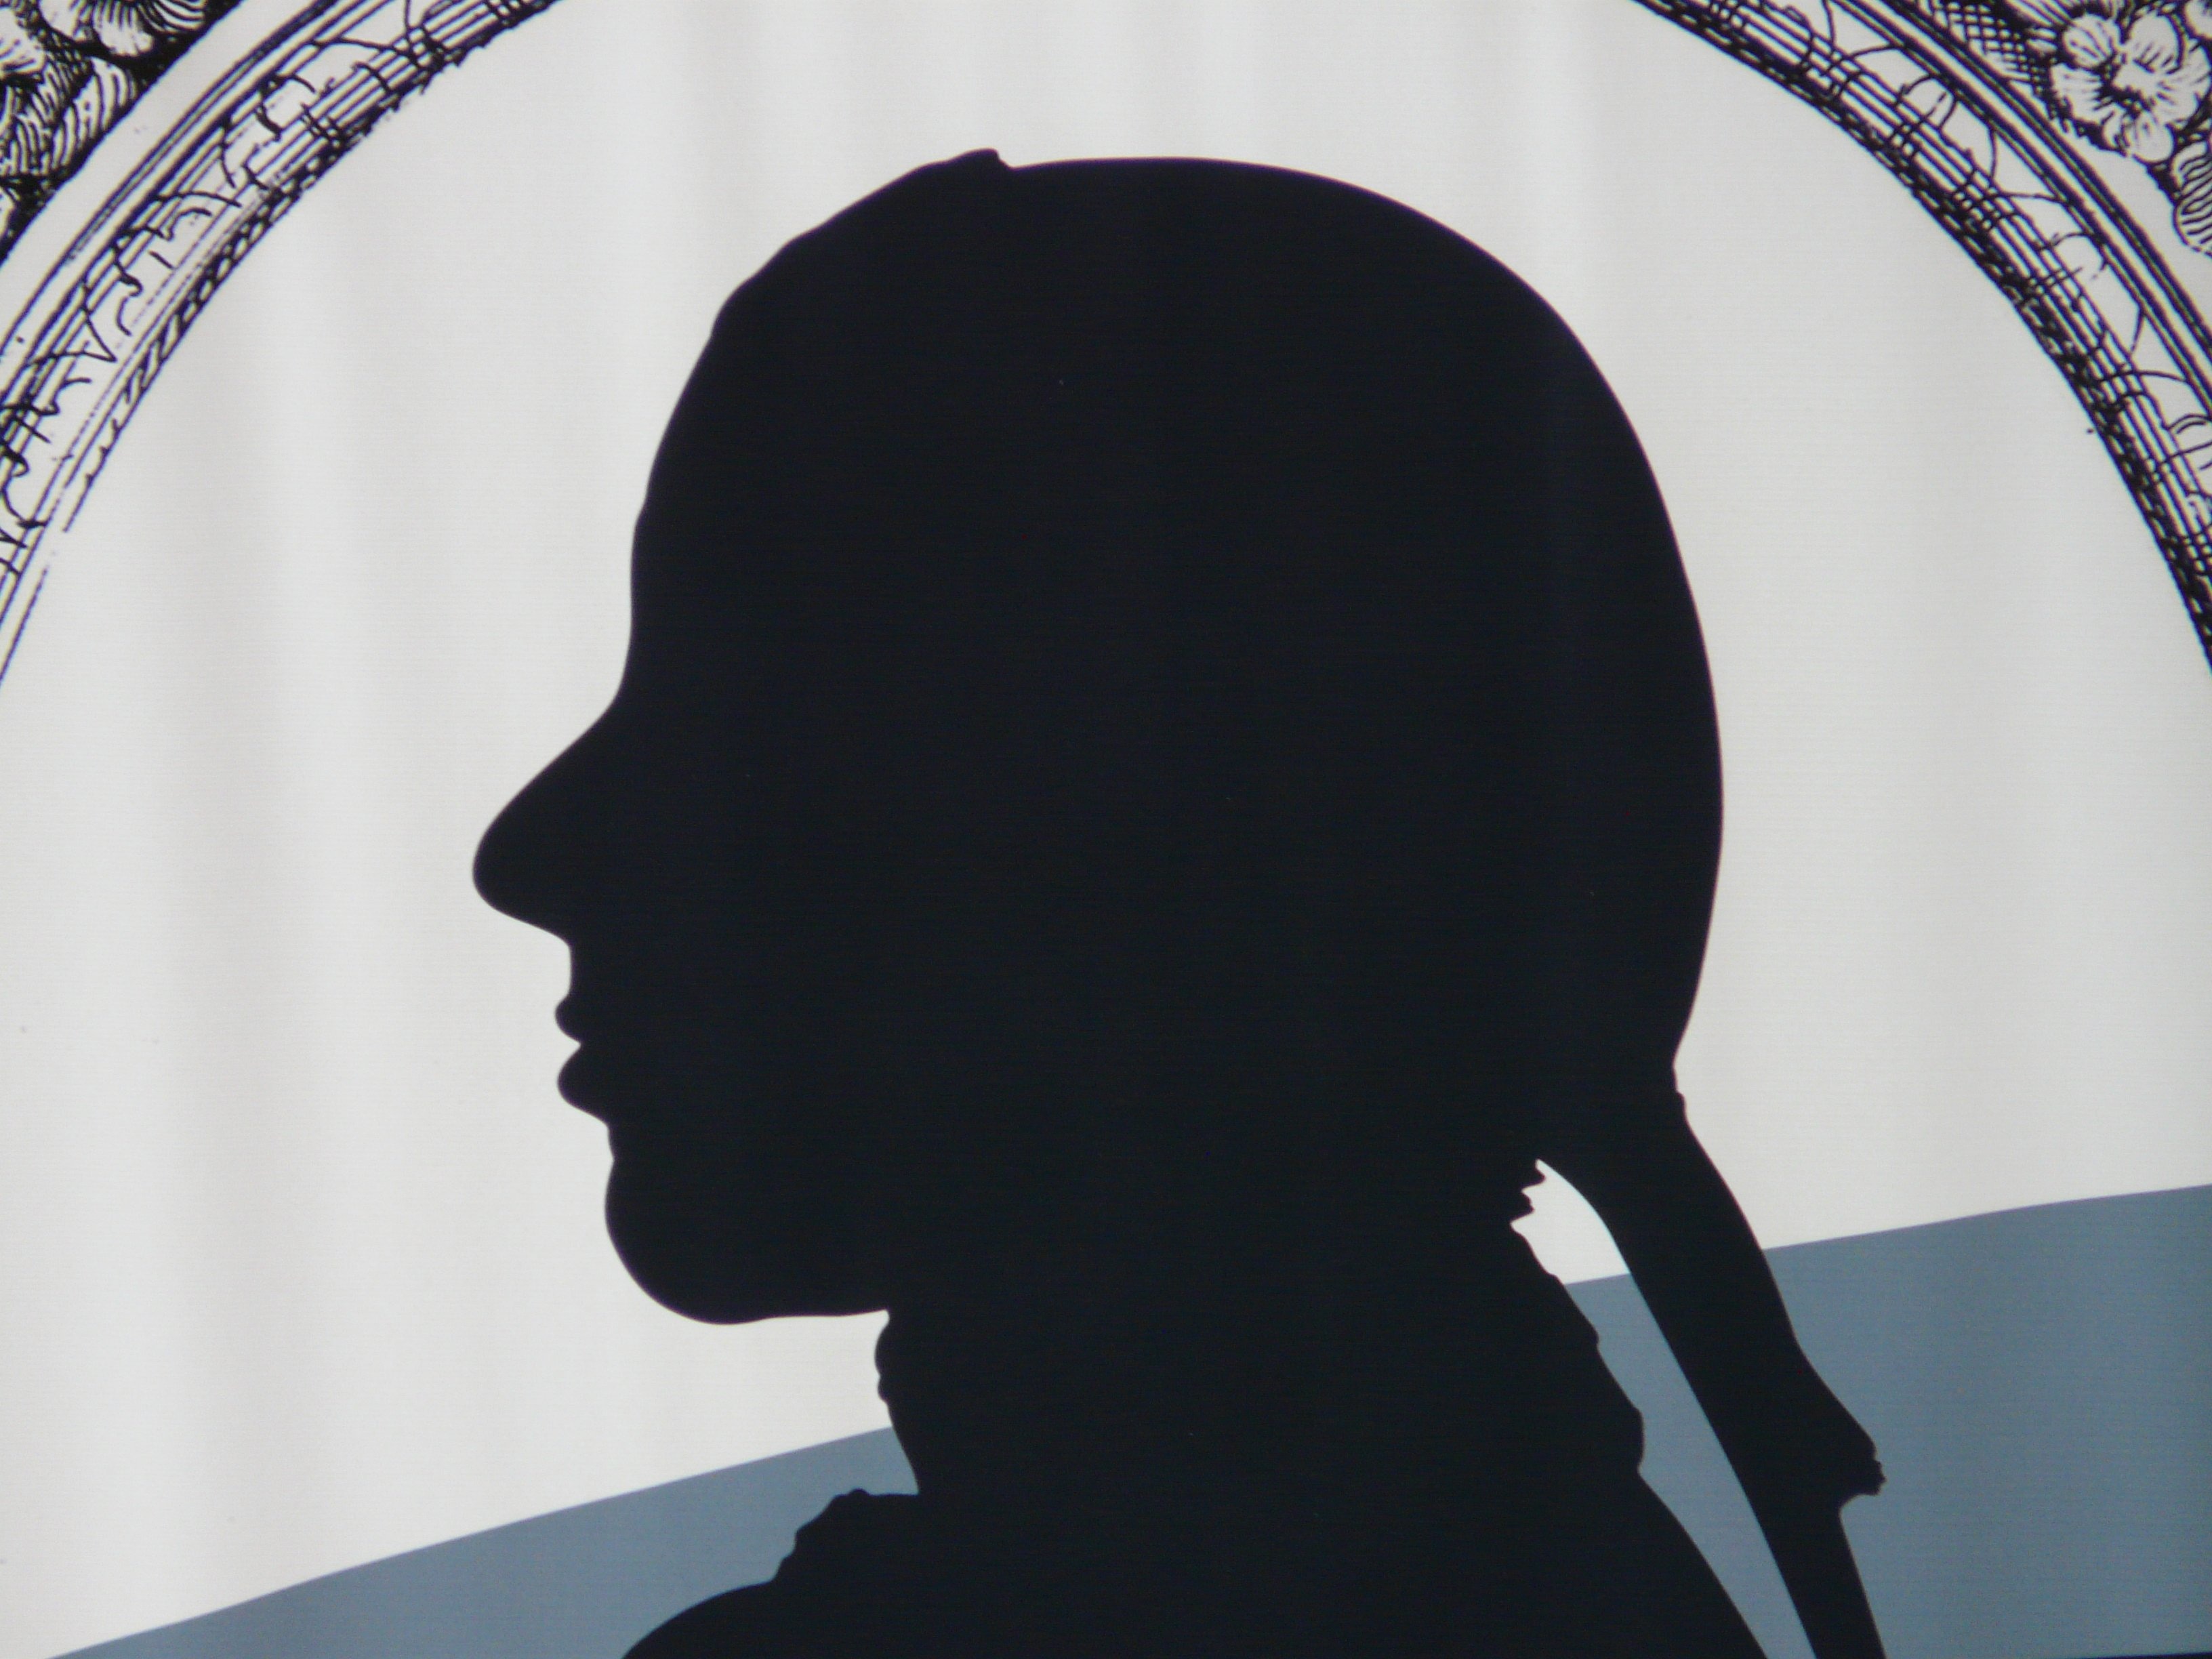 1920x1080 wallpaper | silhouette of woman face logo | Peakpx